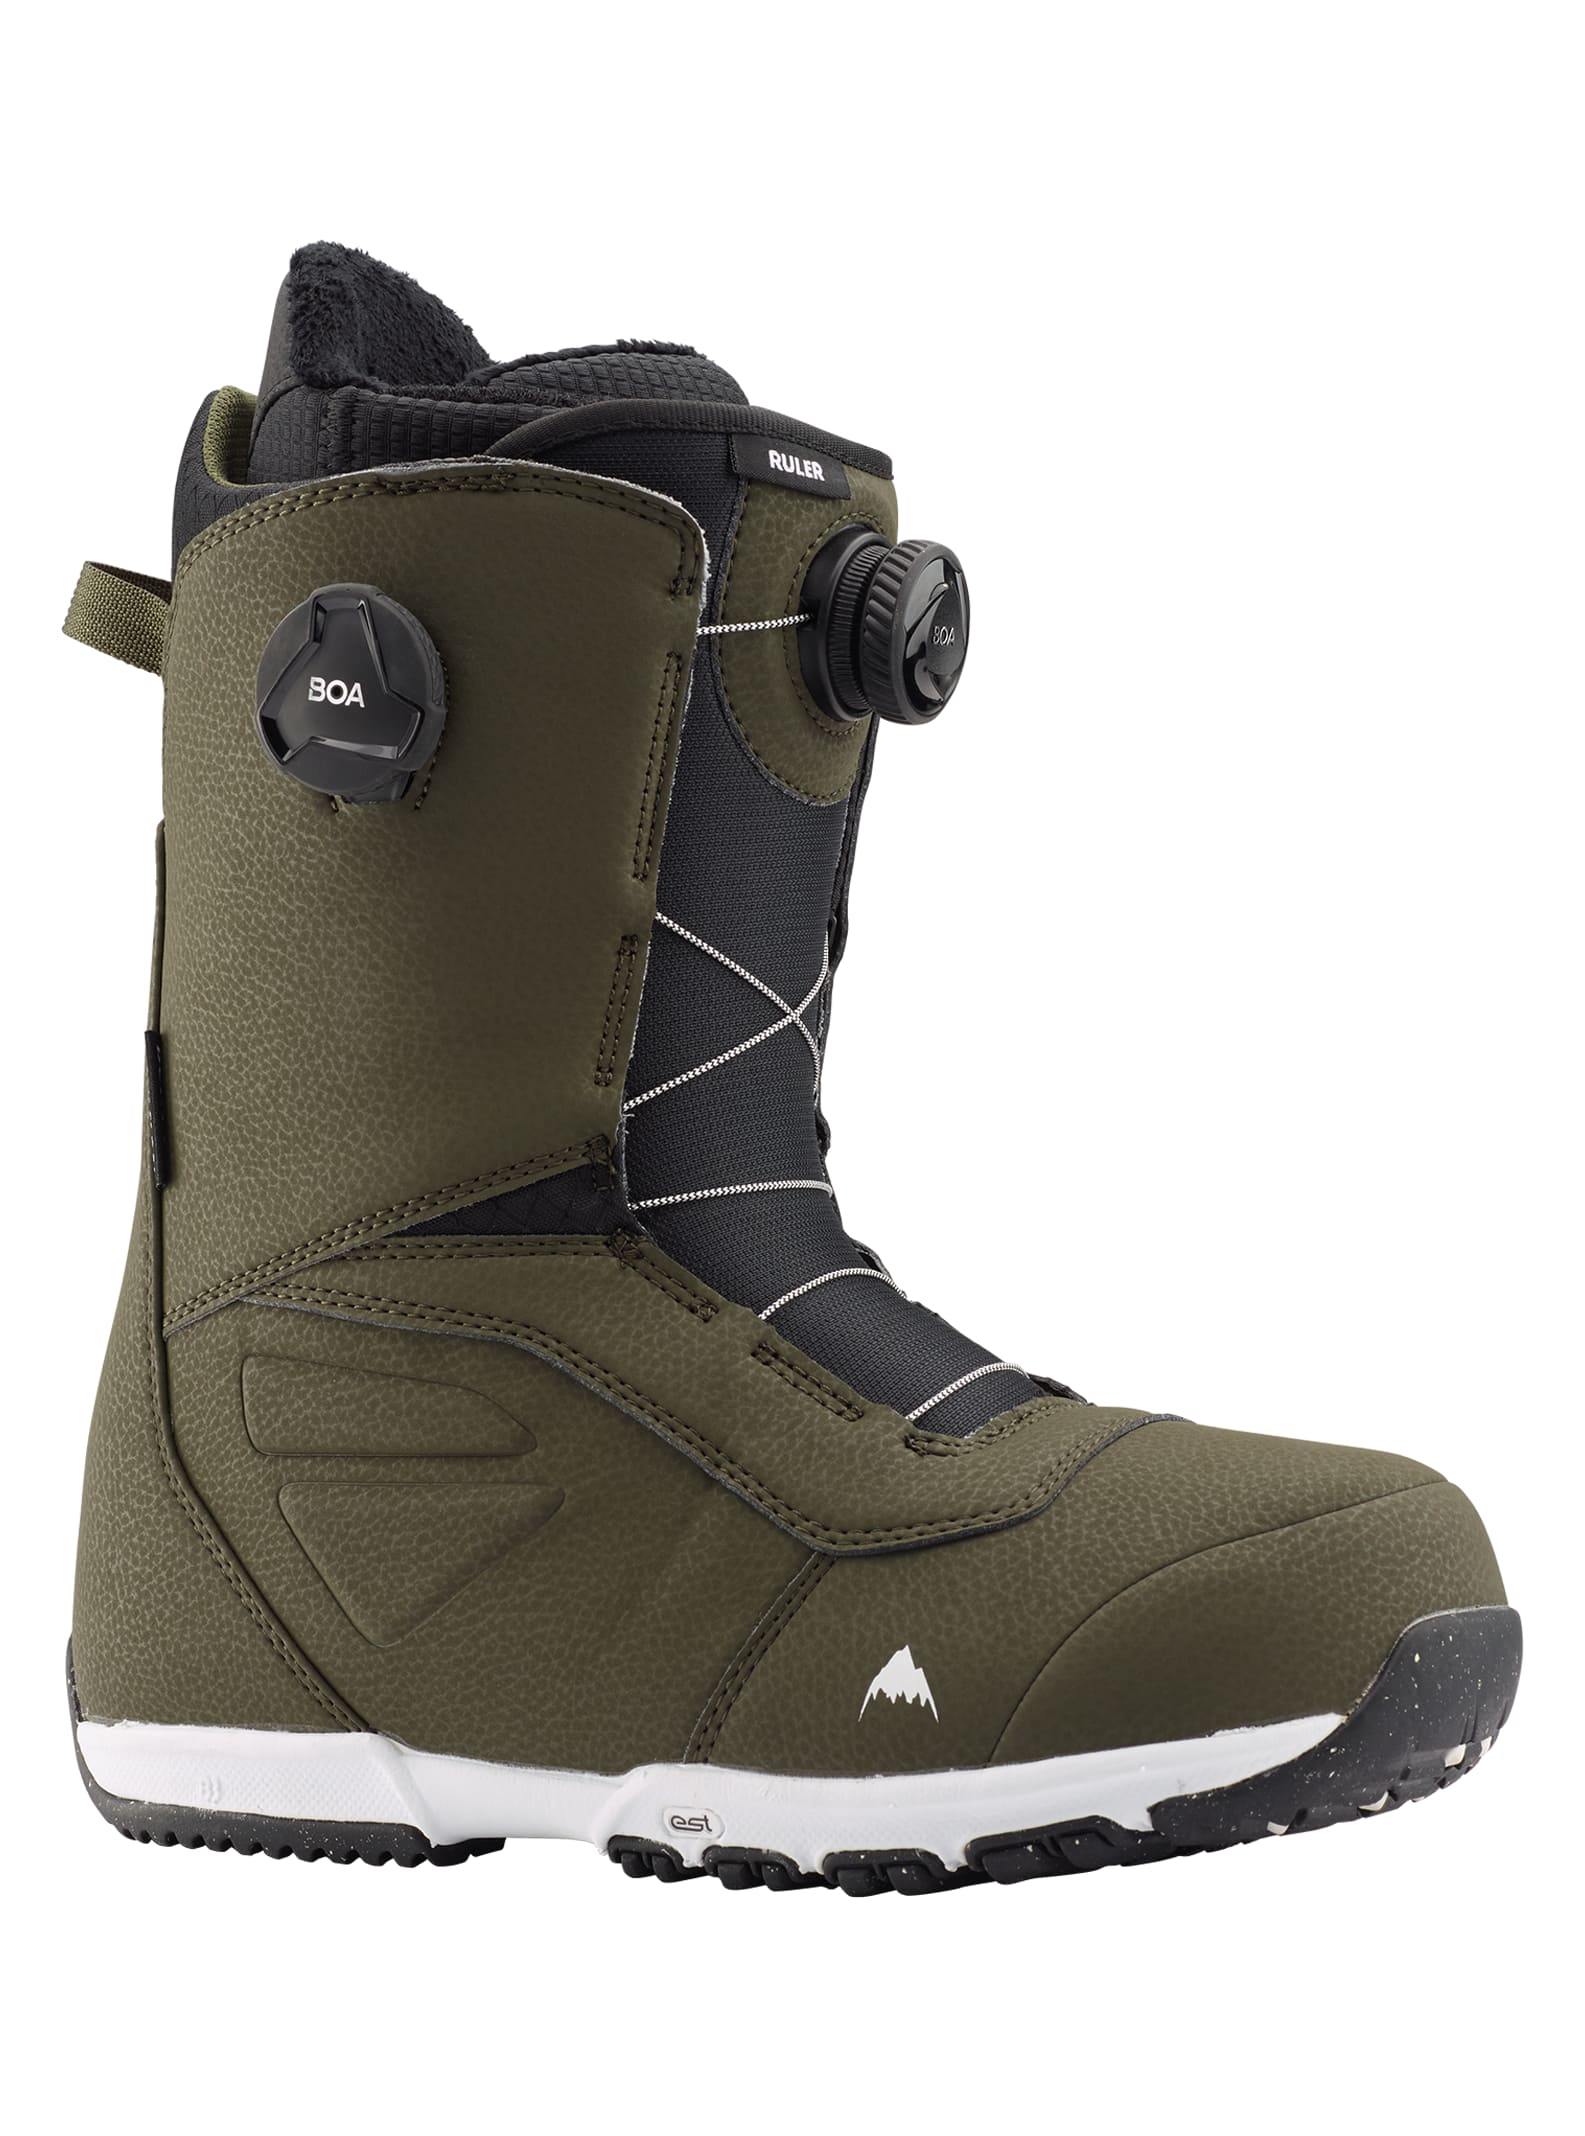 Burton - Boots de snowboard Ruler Boa® homme, Clover, 11